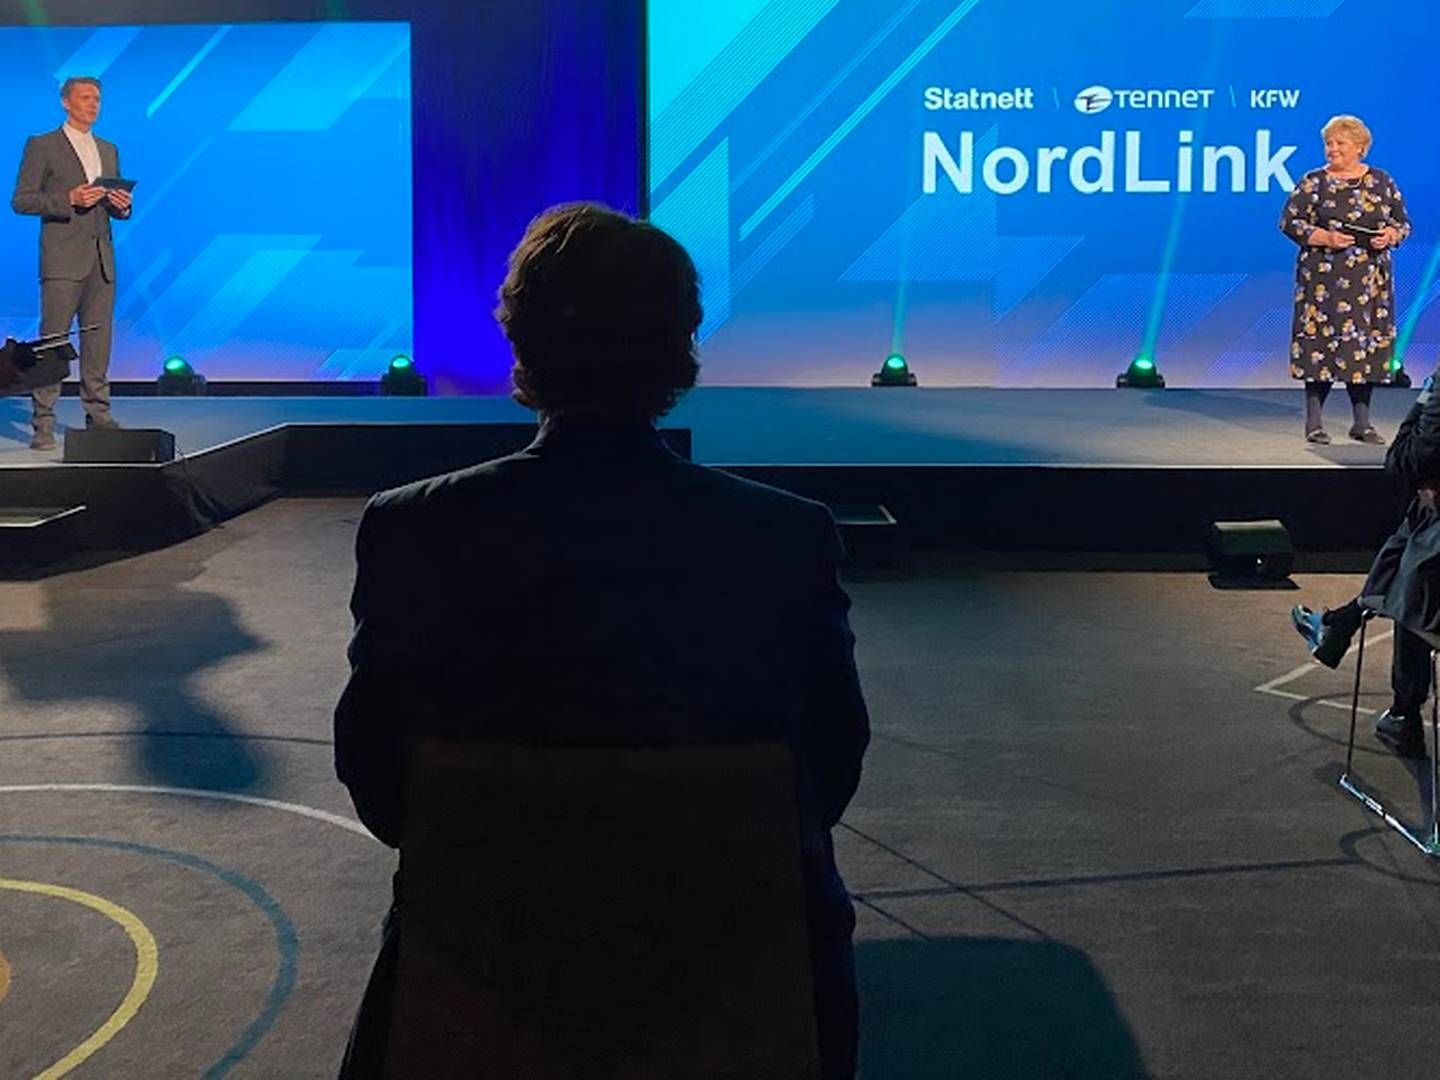 NordLink-kabelen mellom Norge og Tyskland ble offisielt åpnet 27. mai 2021. Da hadde den vært i prøvedrift en stund. Tre år senere har den fortsatt utfordringer knyttet til plutselige utfall og andre problemer. | Foto: Anders Lie Brenna